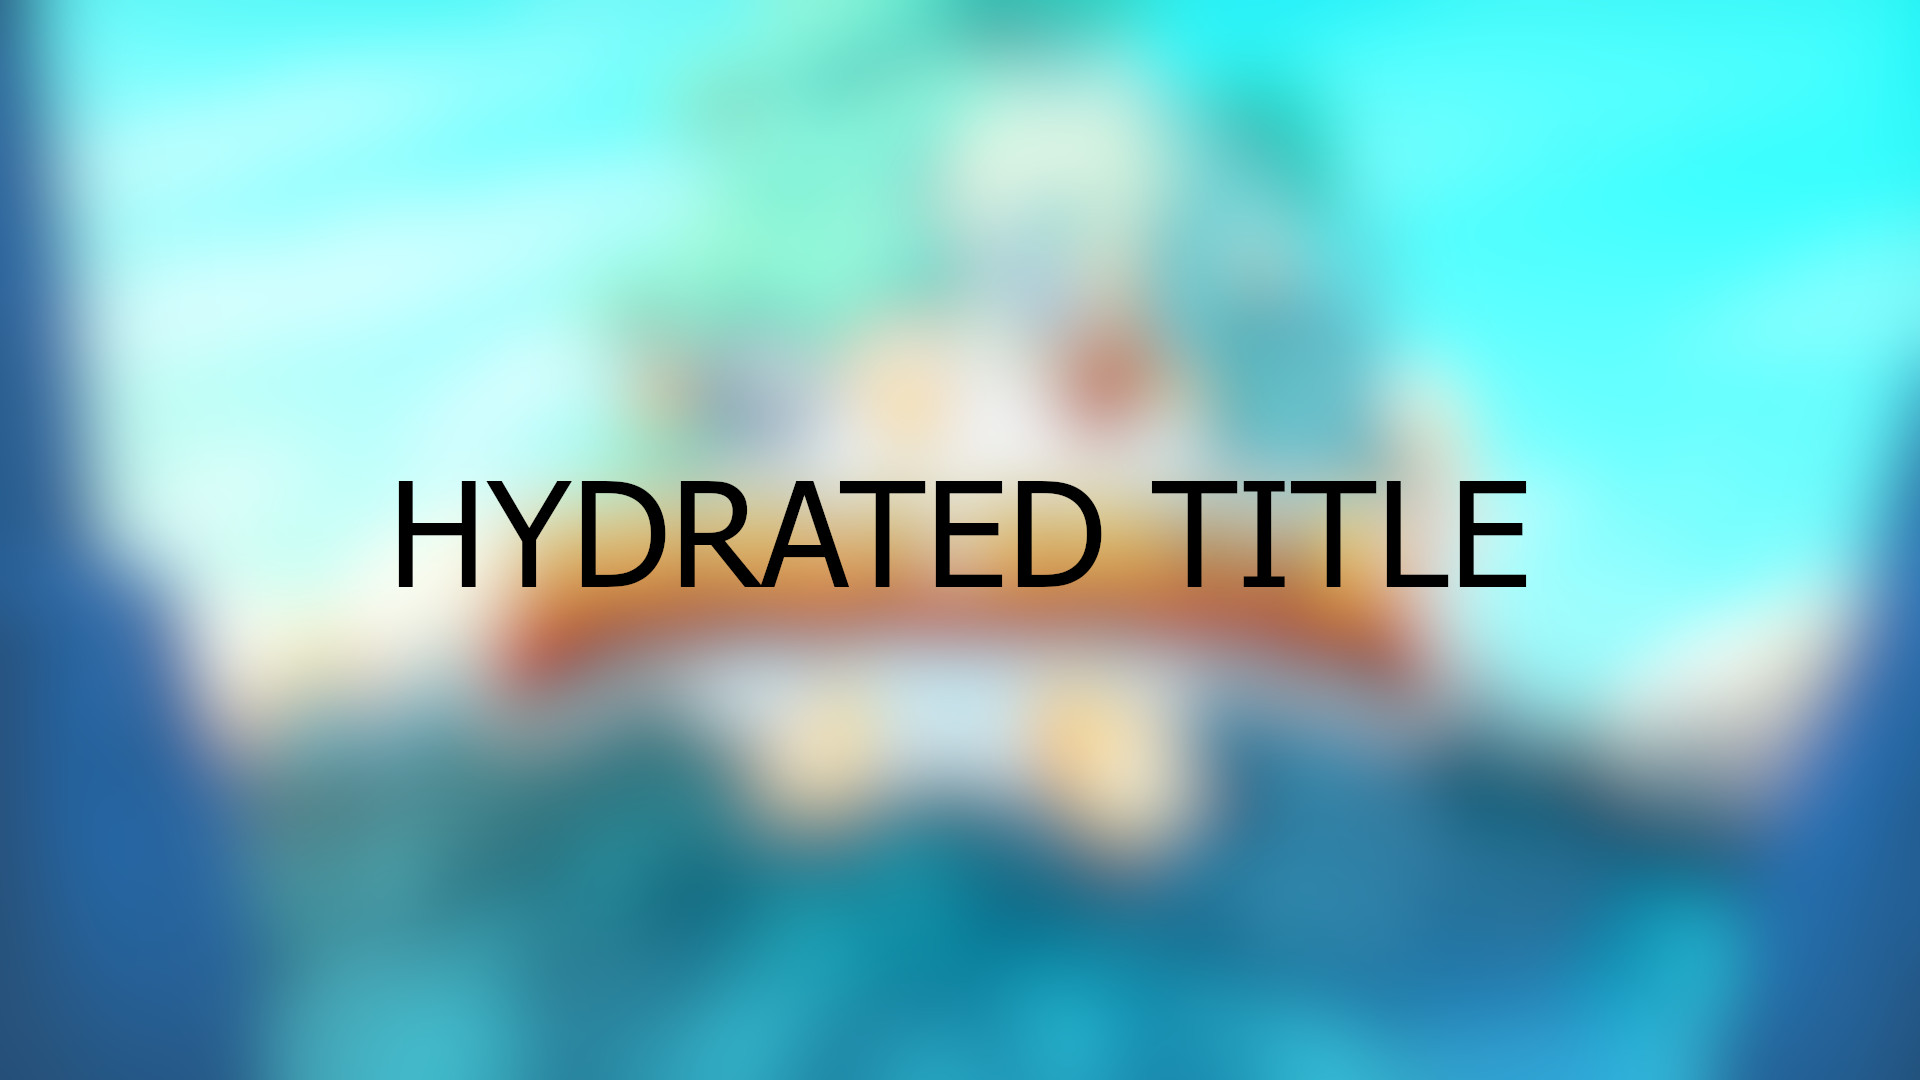 Brawlhalla - Hydrated Title DLC CD Key USD 0.29